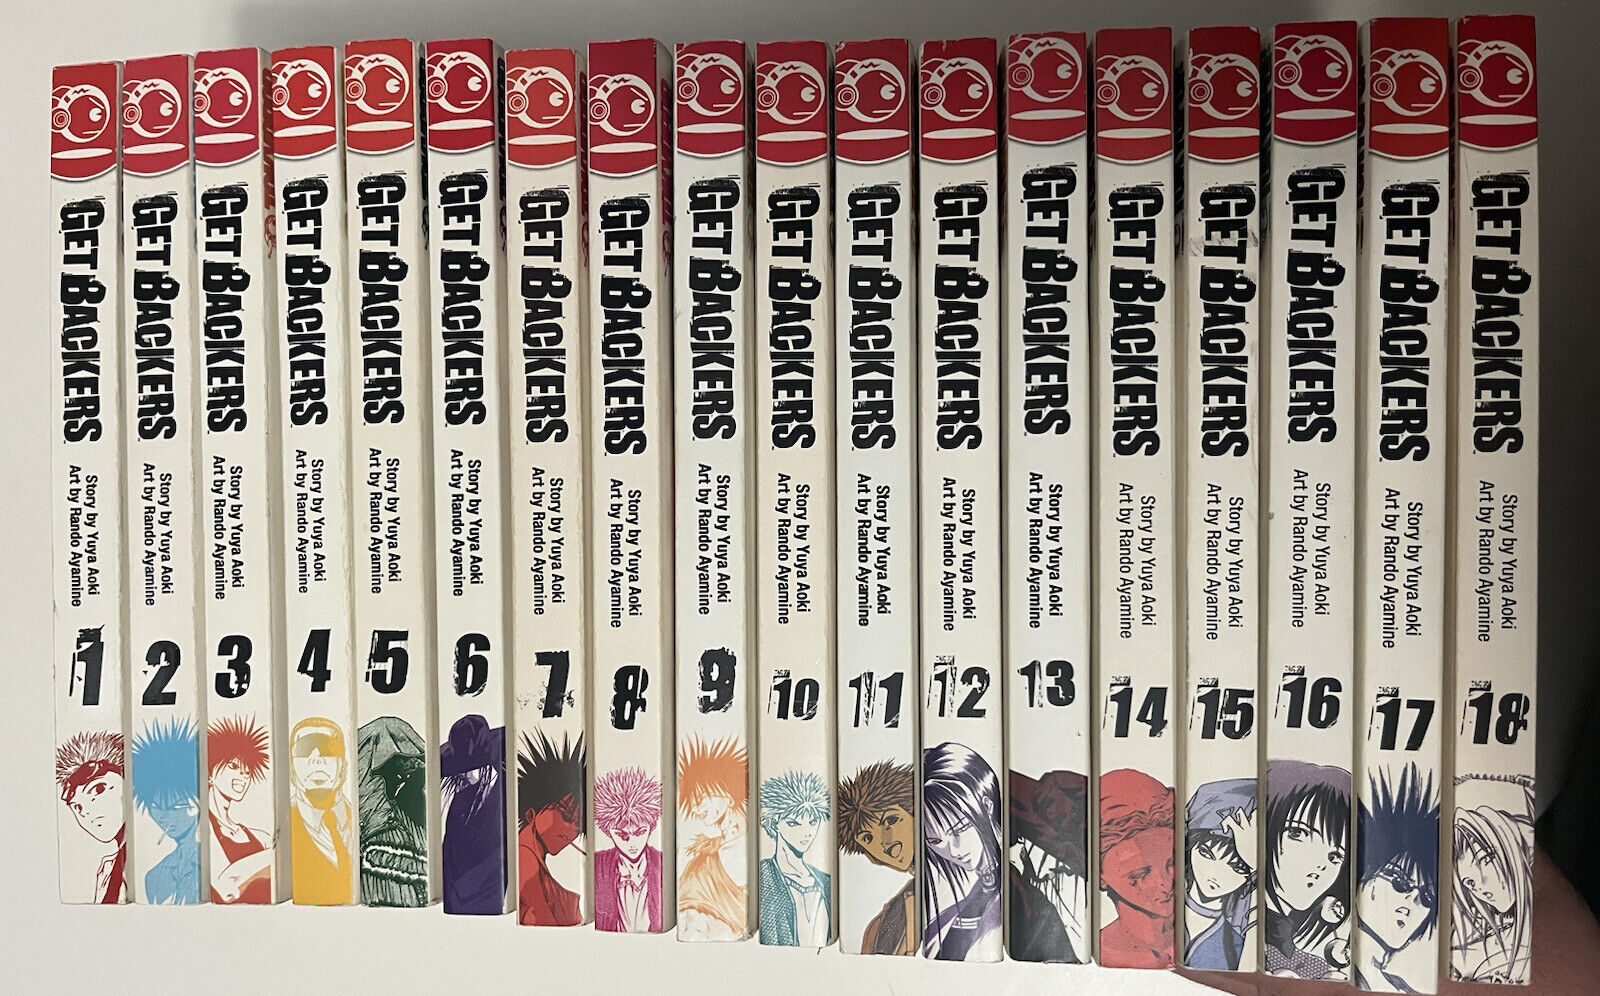 Get Backers Manga Lot Volumes 1 - 18 Lot English Books Yuya Okinawa Rando